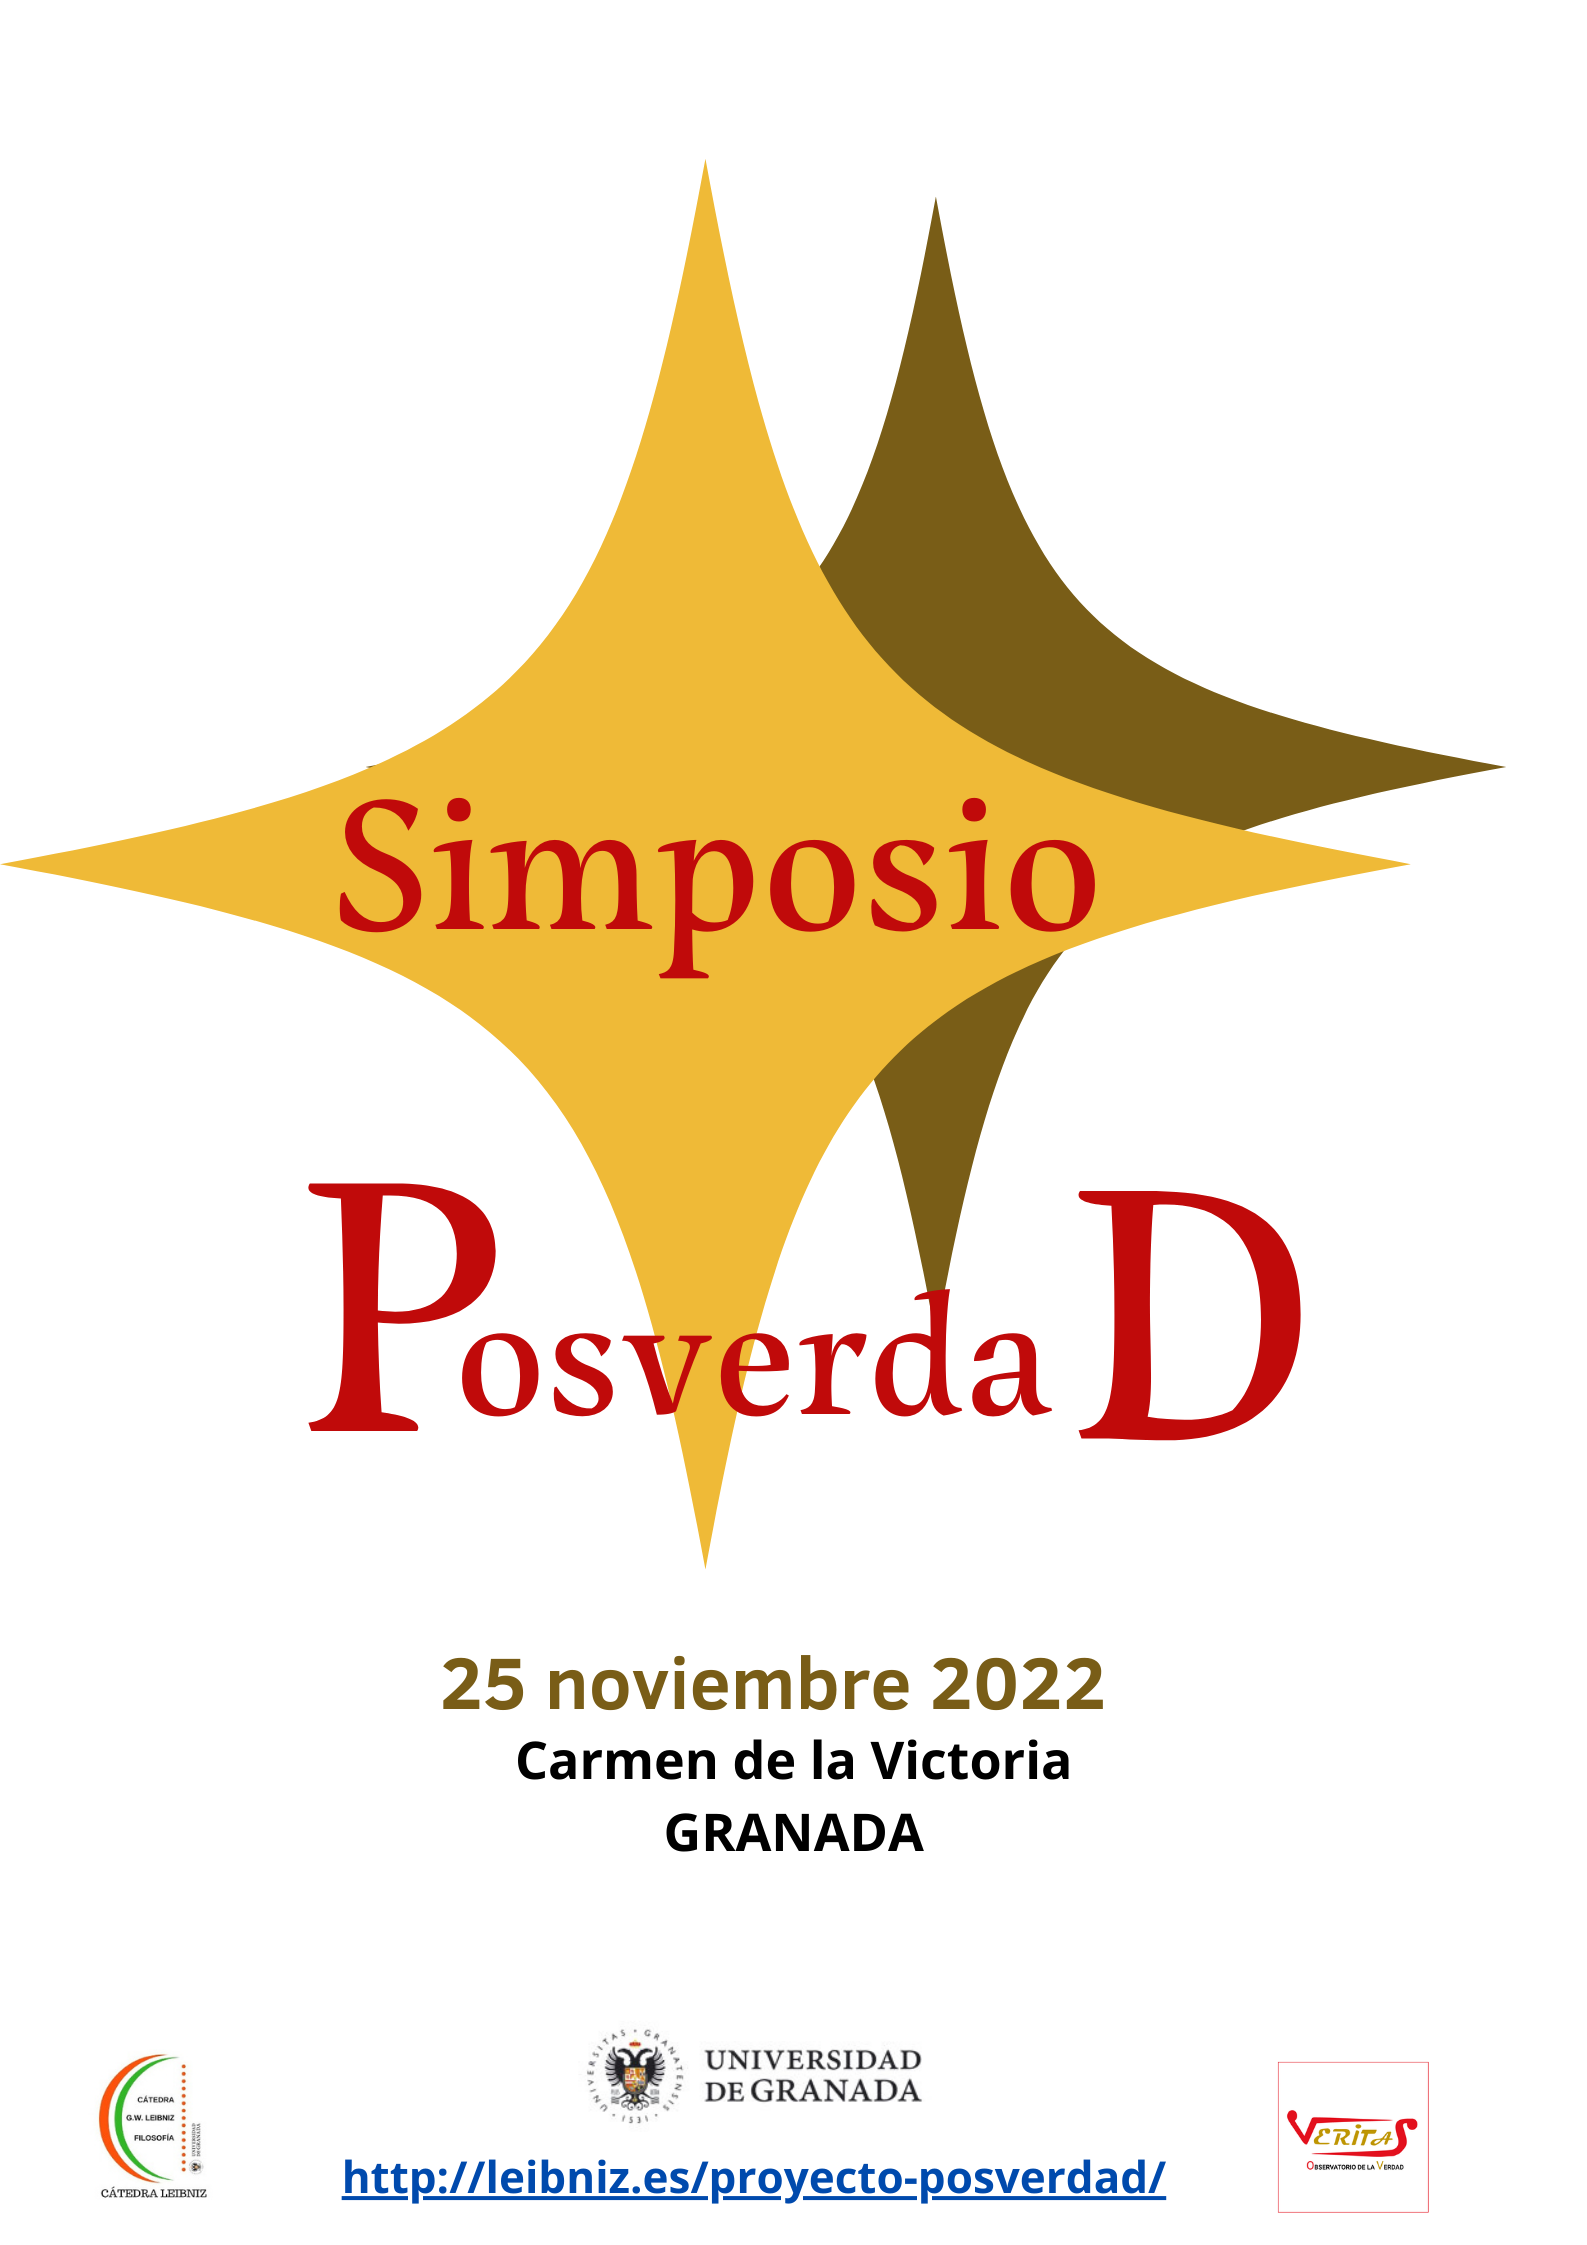 Simposio Posverdad (25 noviembre 2022)